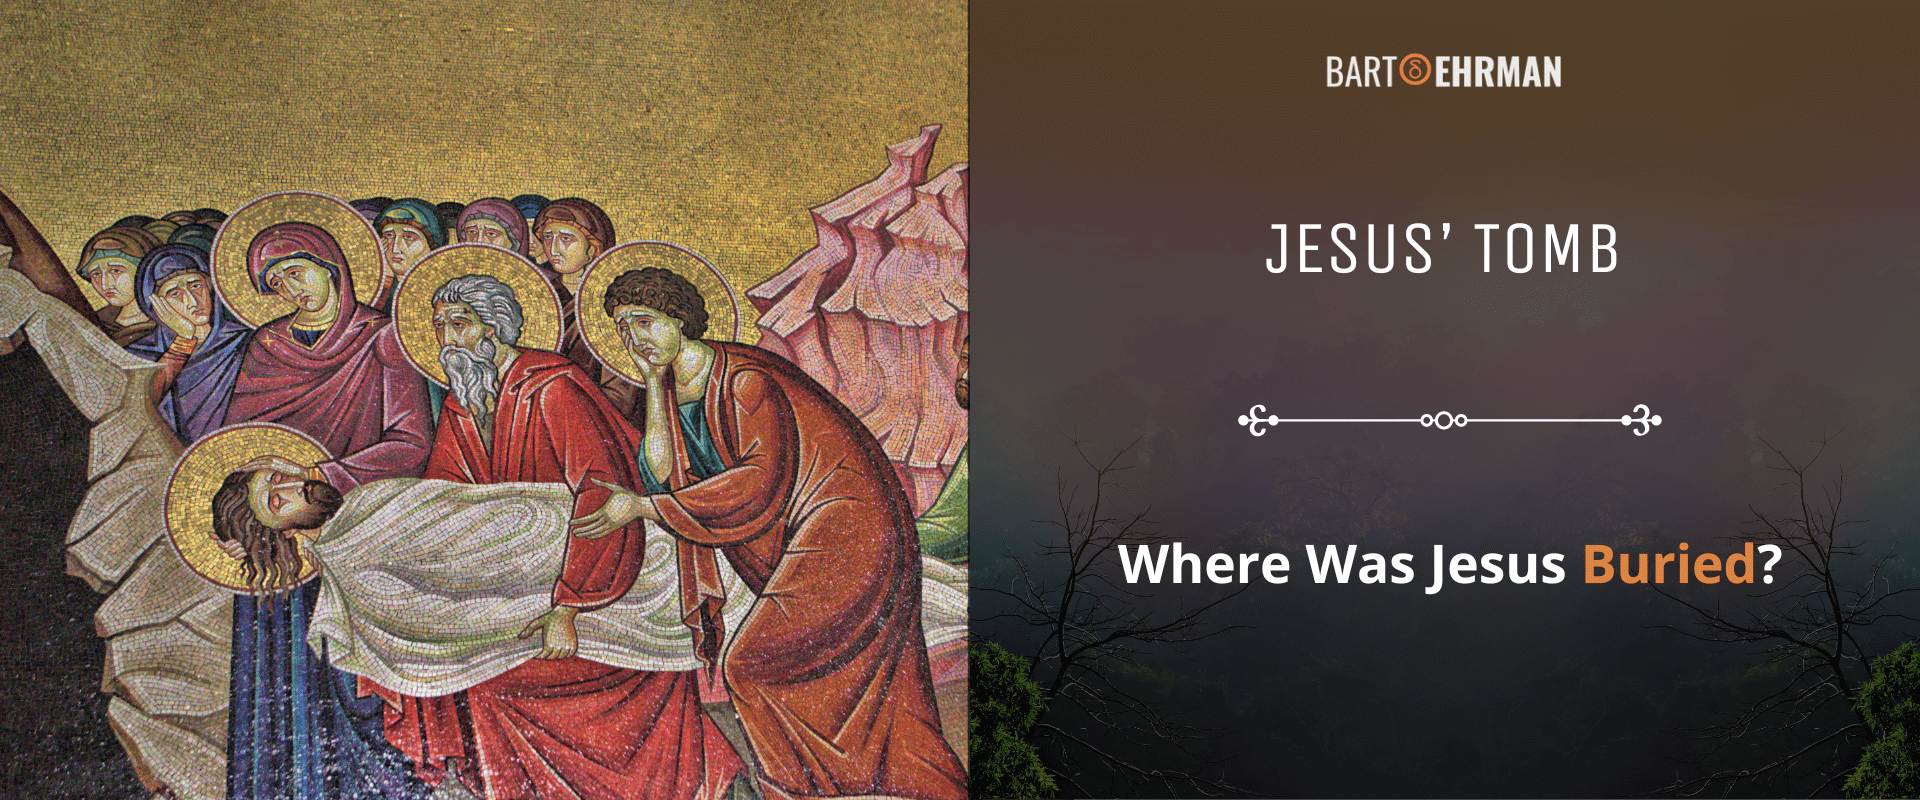 Jesus’ Tomb - Where was Jesus Buried